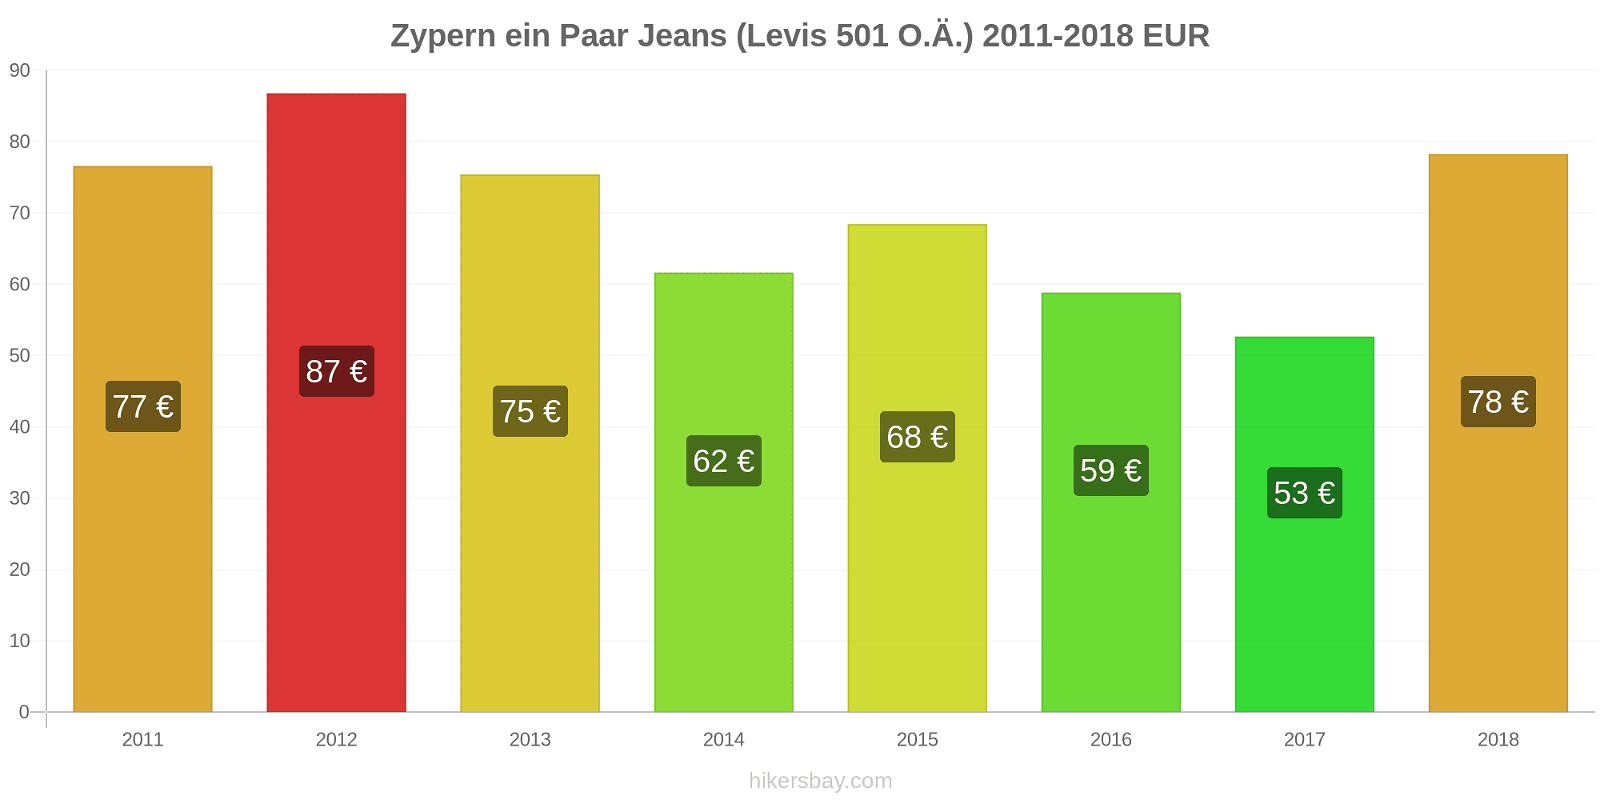 Zypern Preisänderungen 1 Paar Jeans (Levis 501 oder ähnlich) hikersbay.com